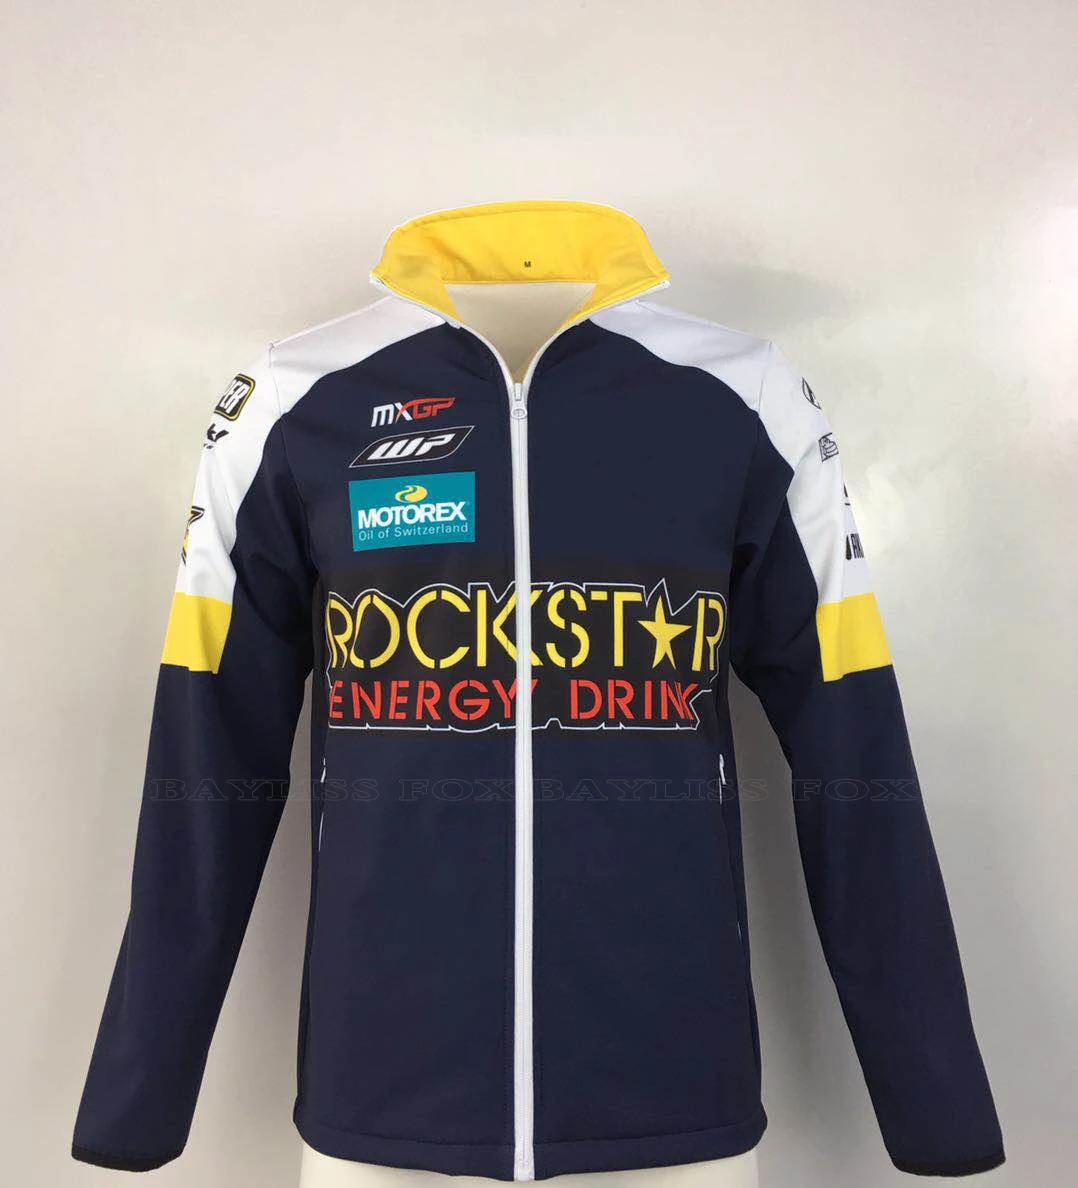 Ветрозащитная спортивная одежда для мотокросса MX GP, сохраняющая тепло, куртки для командных заводских гонок, скоростного спуска и ралли